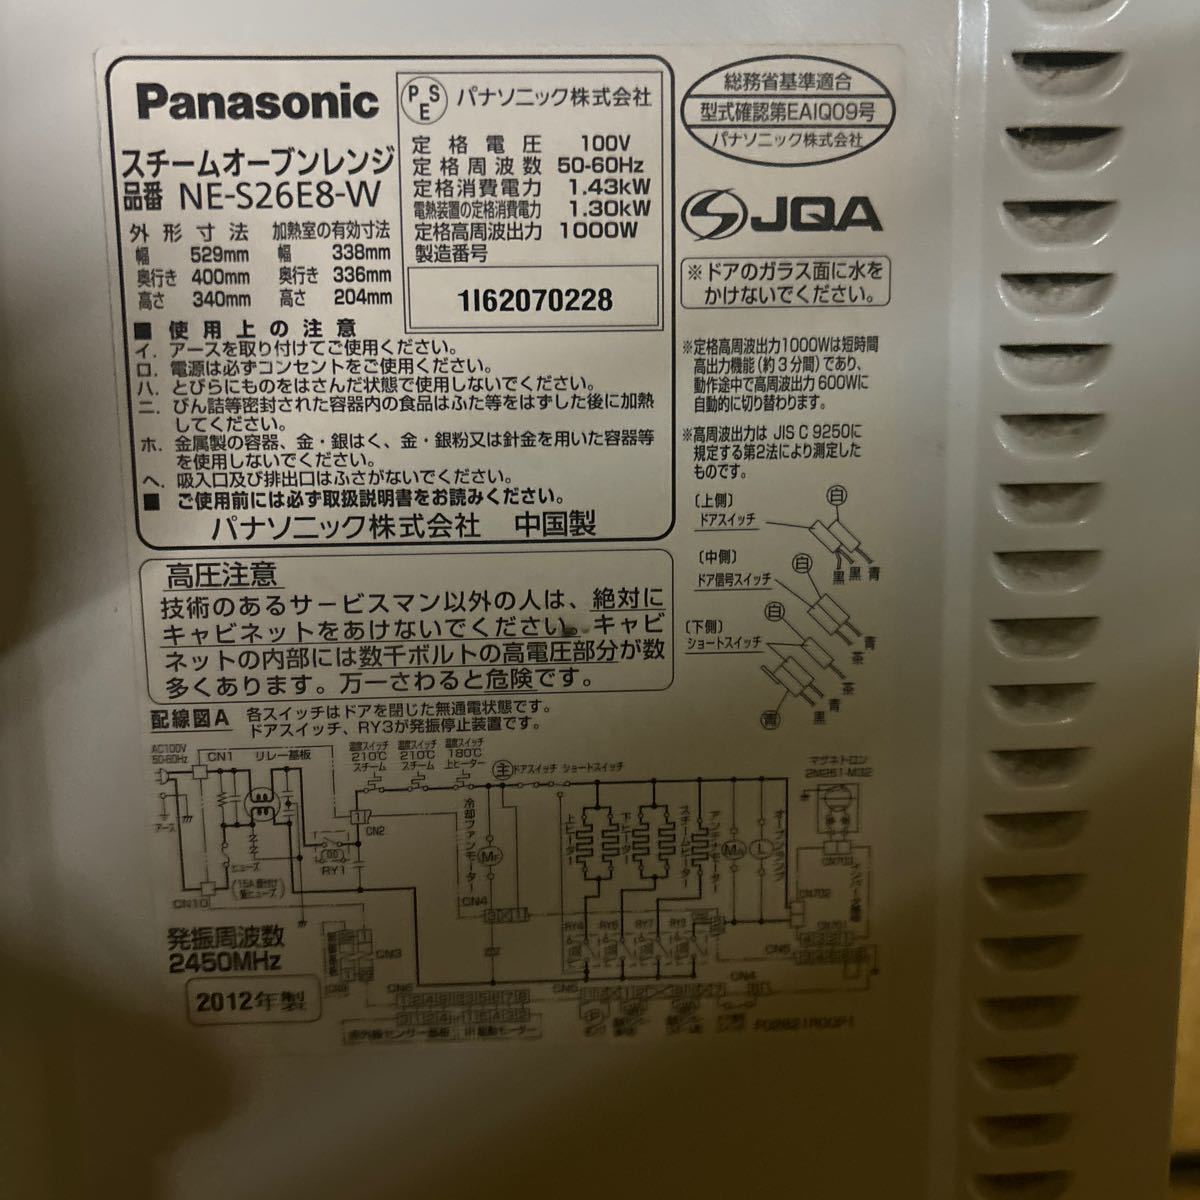 Panasonic Panasonic NE-S26E8-W конвекционно-паровая печь микроволновая печь микроволновая печь плита [ рабочее состояние подтверждено ] B0227A002